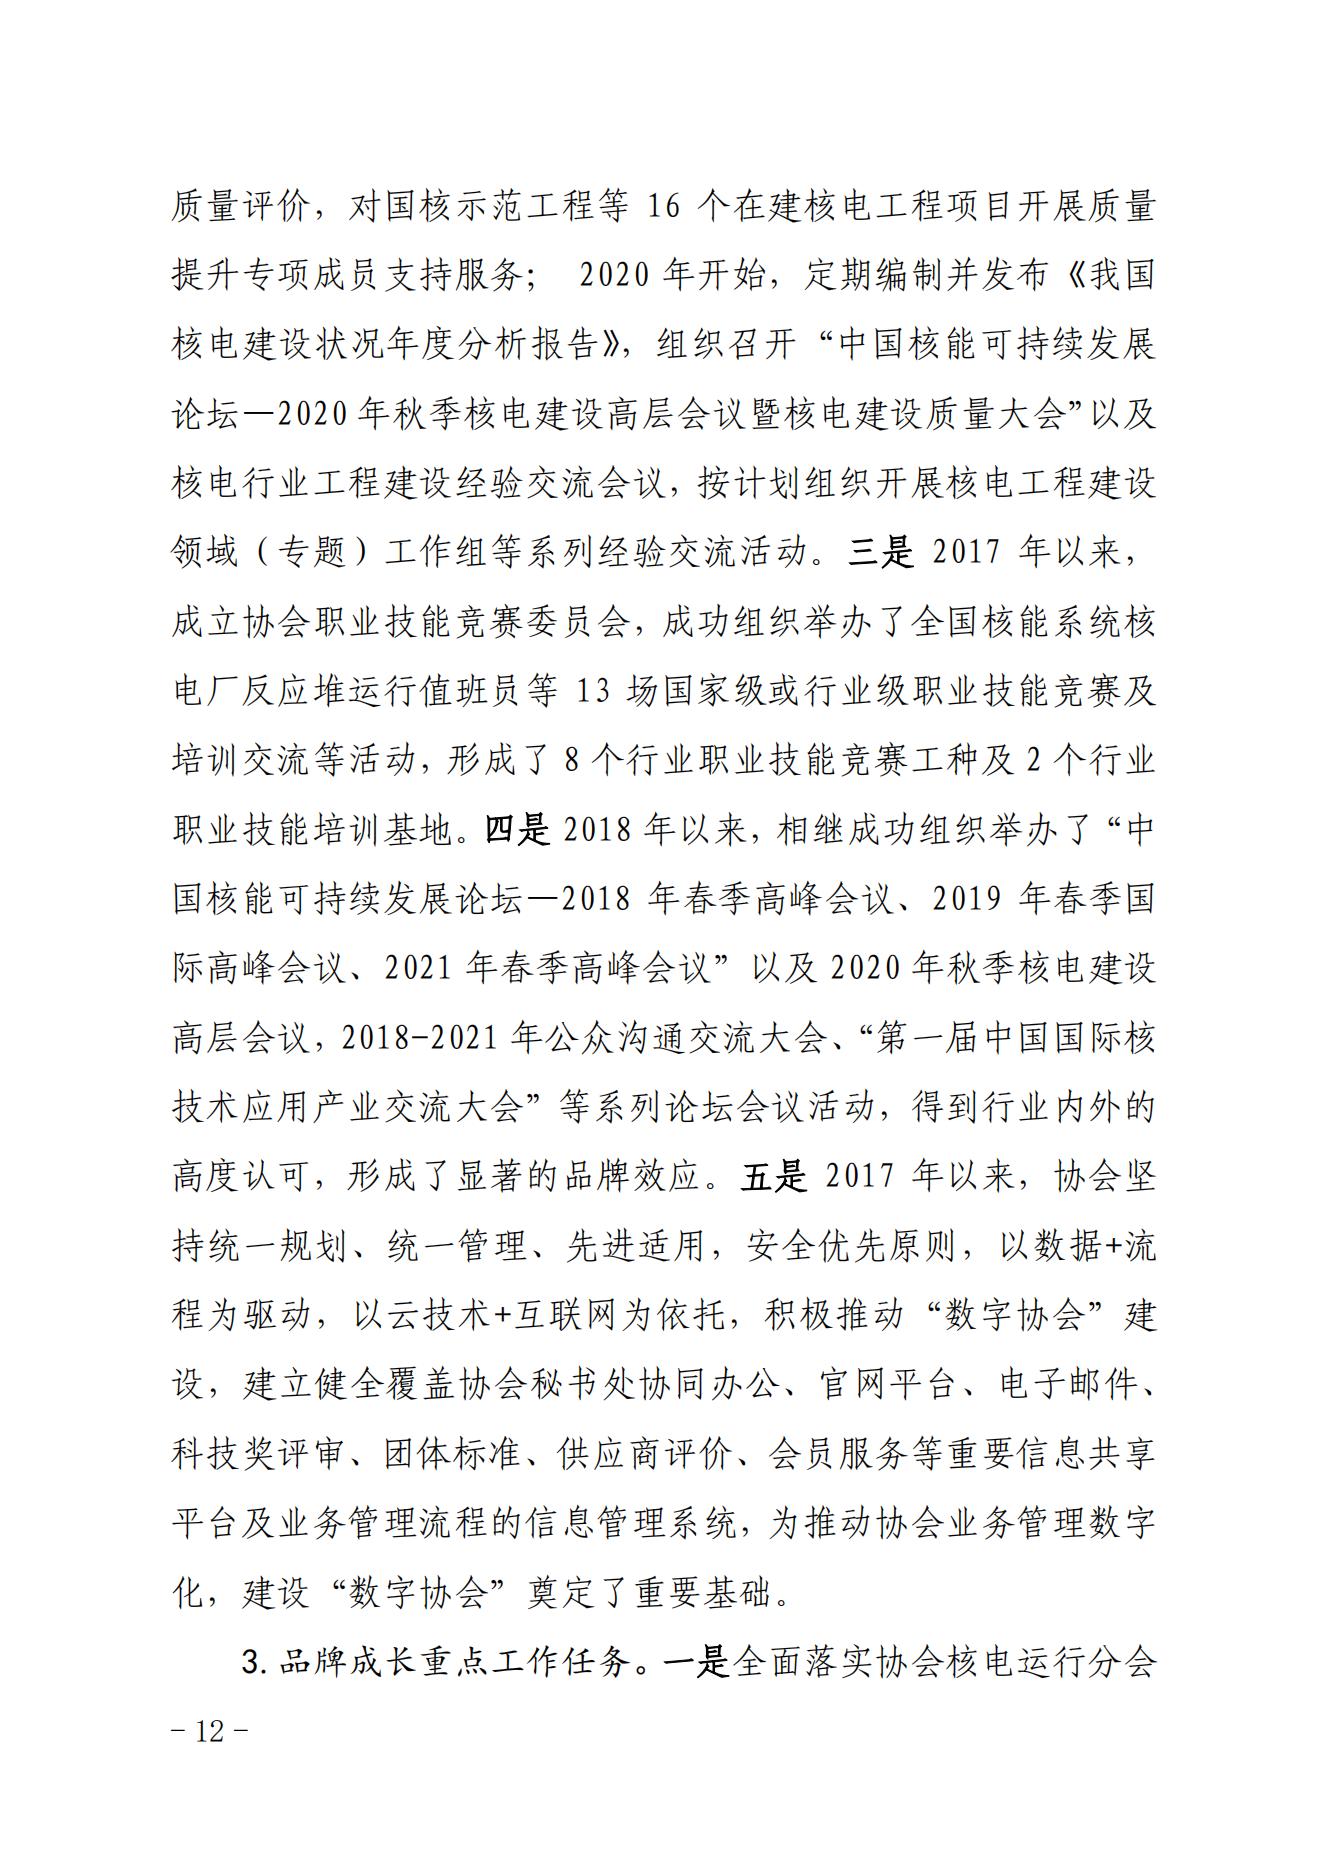 关于印发《中国核能行业协会“品牌协会成长计划”实施方案》的通知_11.jpg